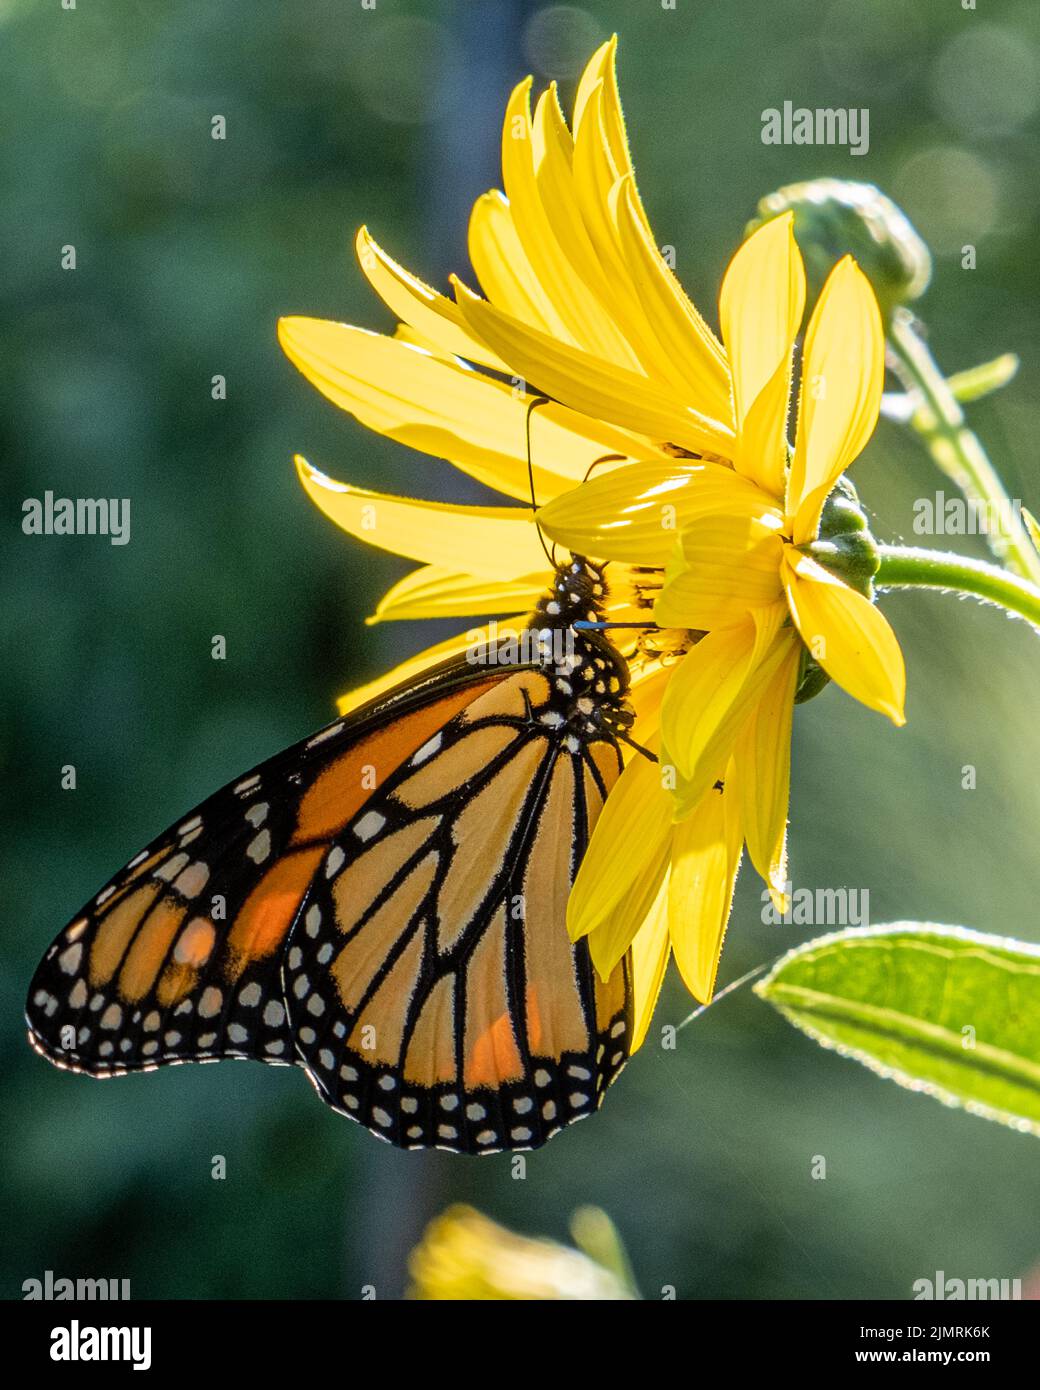 Una mariposa monarca sobre una margarita amarilla Foto de stock